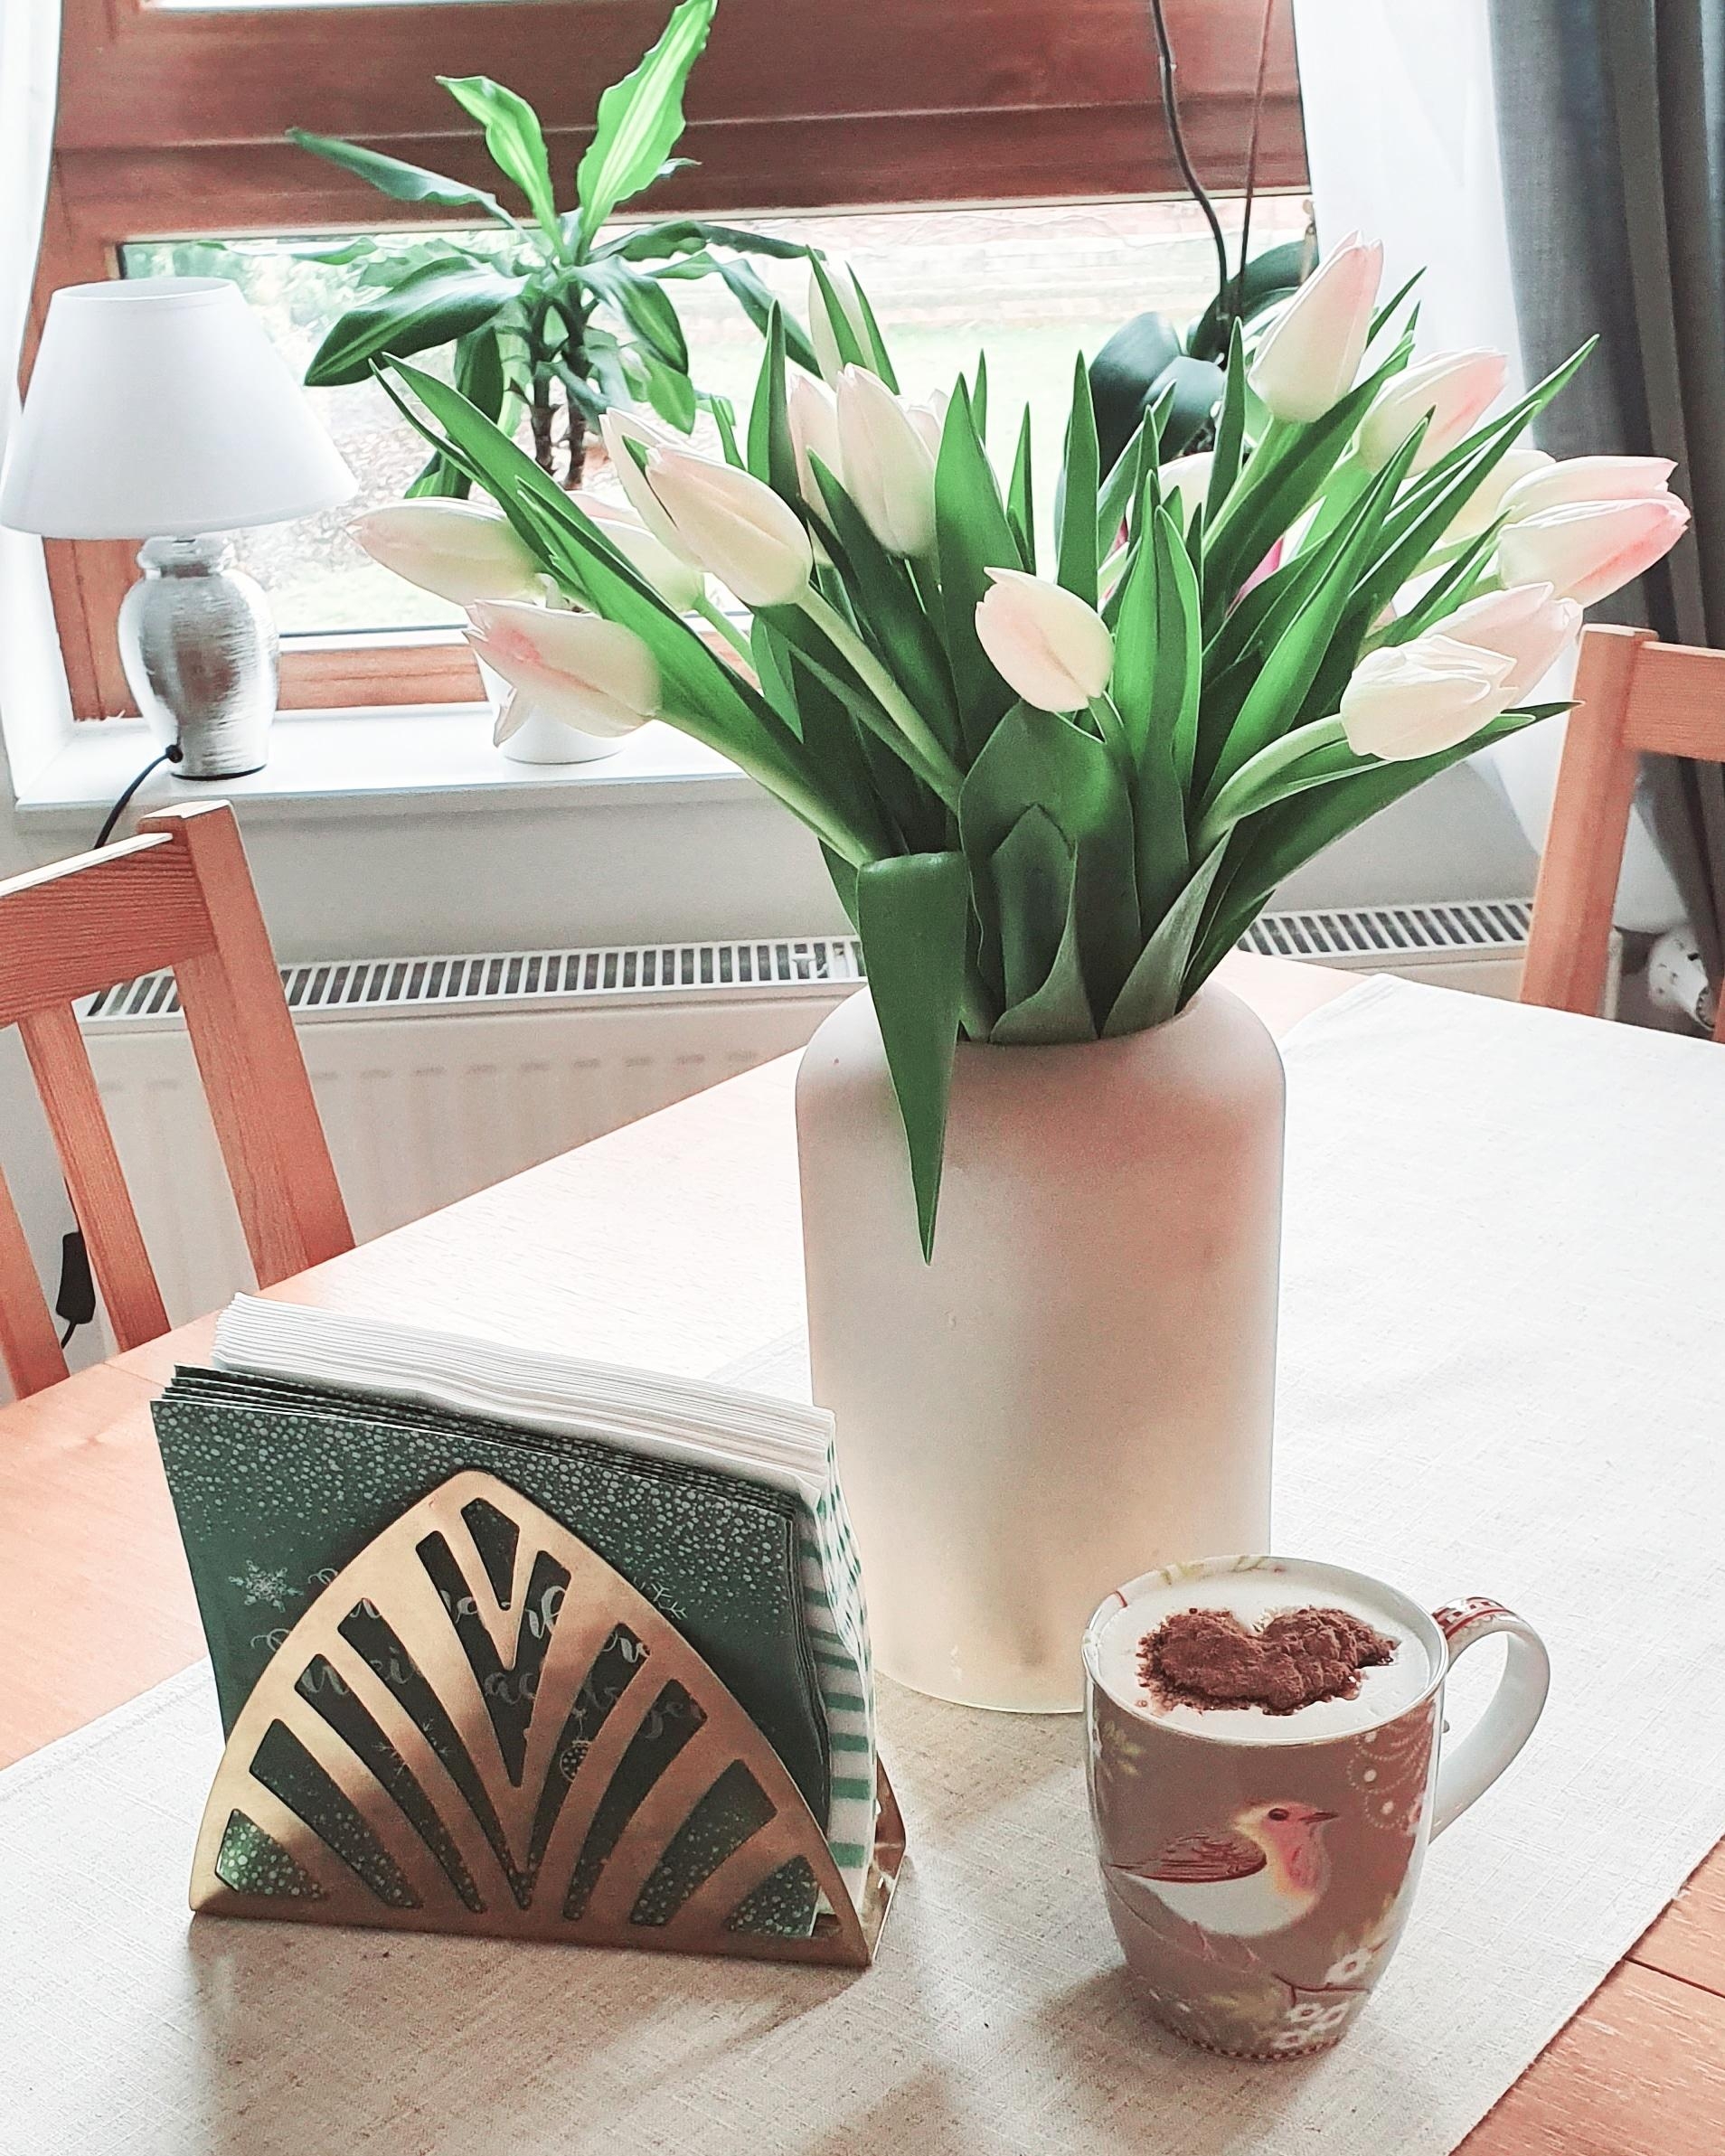 Blumen - L I E B E ♡ 
Der Frühling ist eingezogen! #tulpen #interior #ourhome #blumenliebe #cozyliving #decoration 